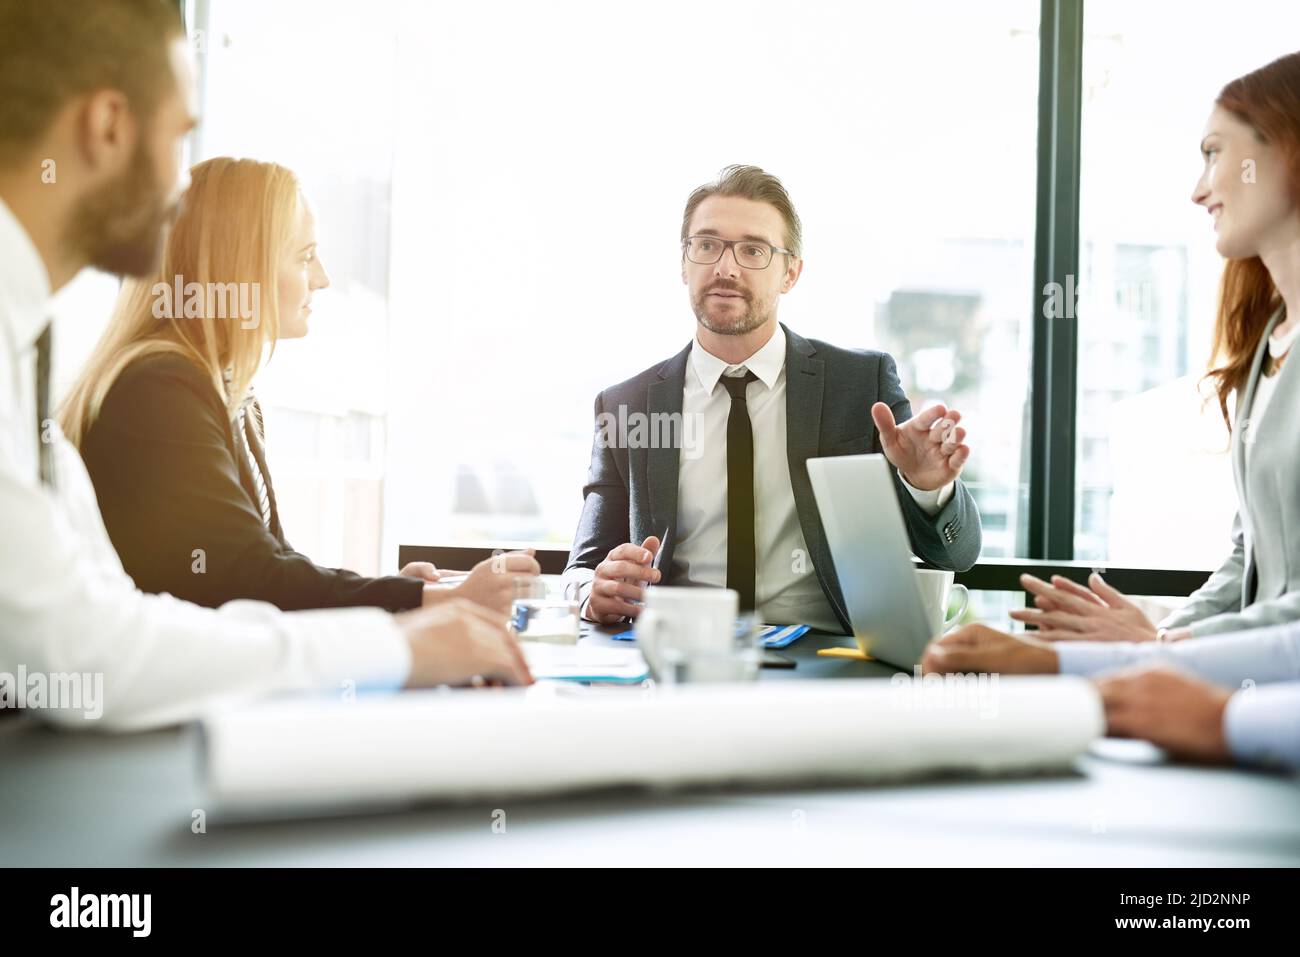 Facilitar su reunión con una dirección clara. Fotografía de un equipo de ejecutivos que tiene una reunión formal en una sala de juntas. Foto de stock